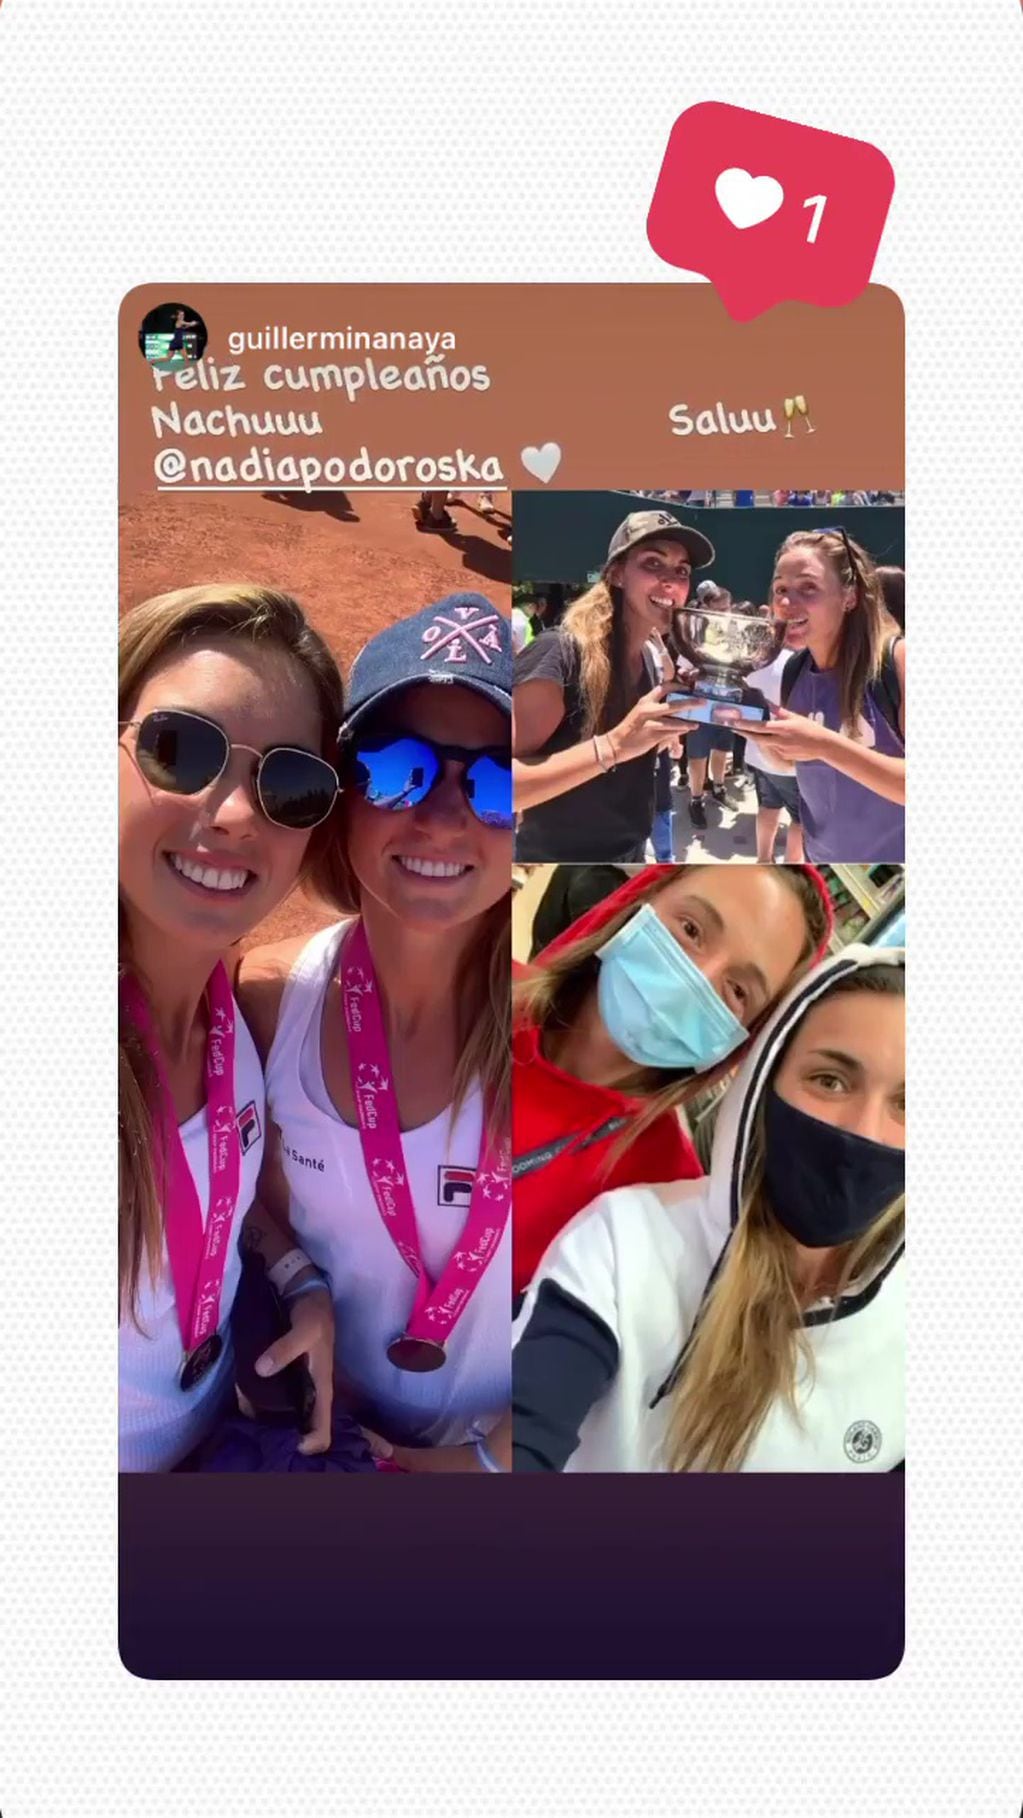 La tenista Guillermina Naya le mandó un saludo por Instagram a la rosarina. (@guillerminanaya)